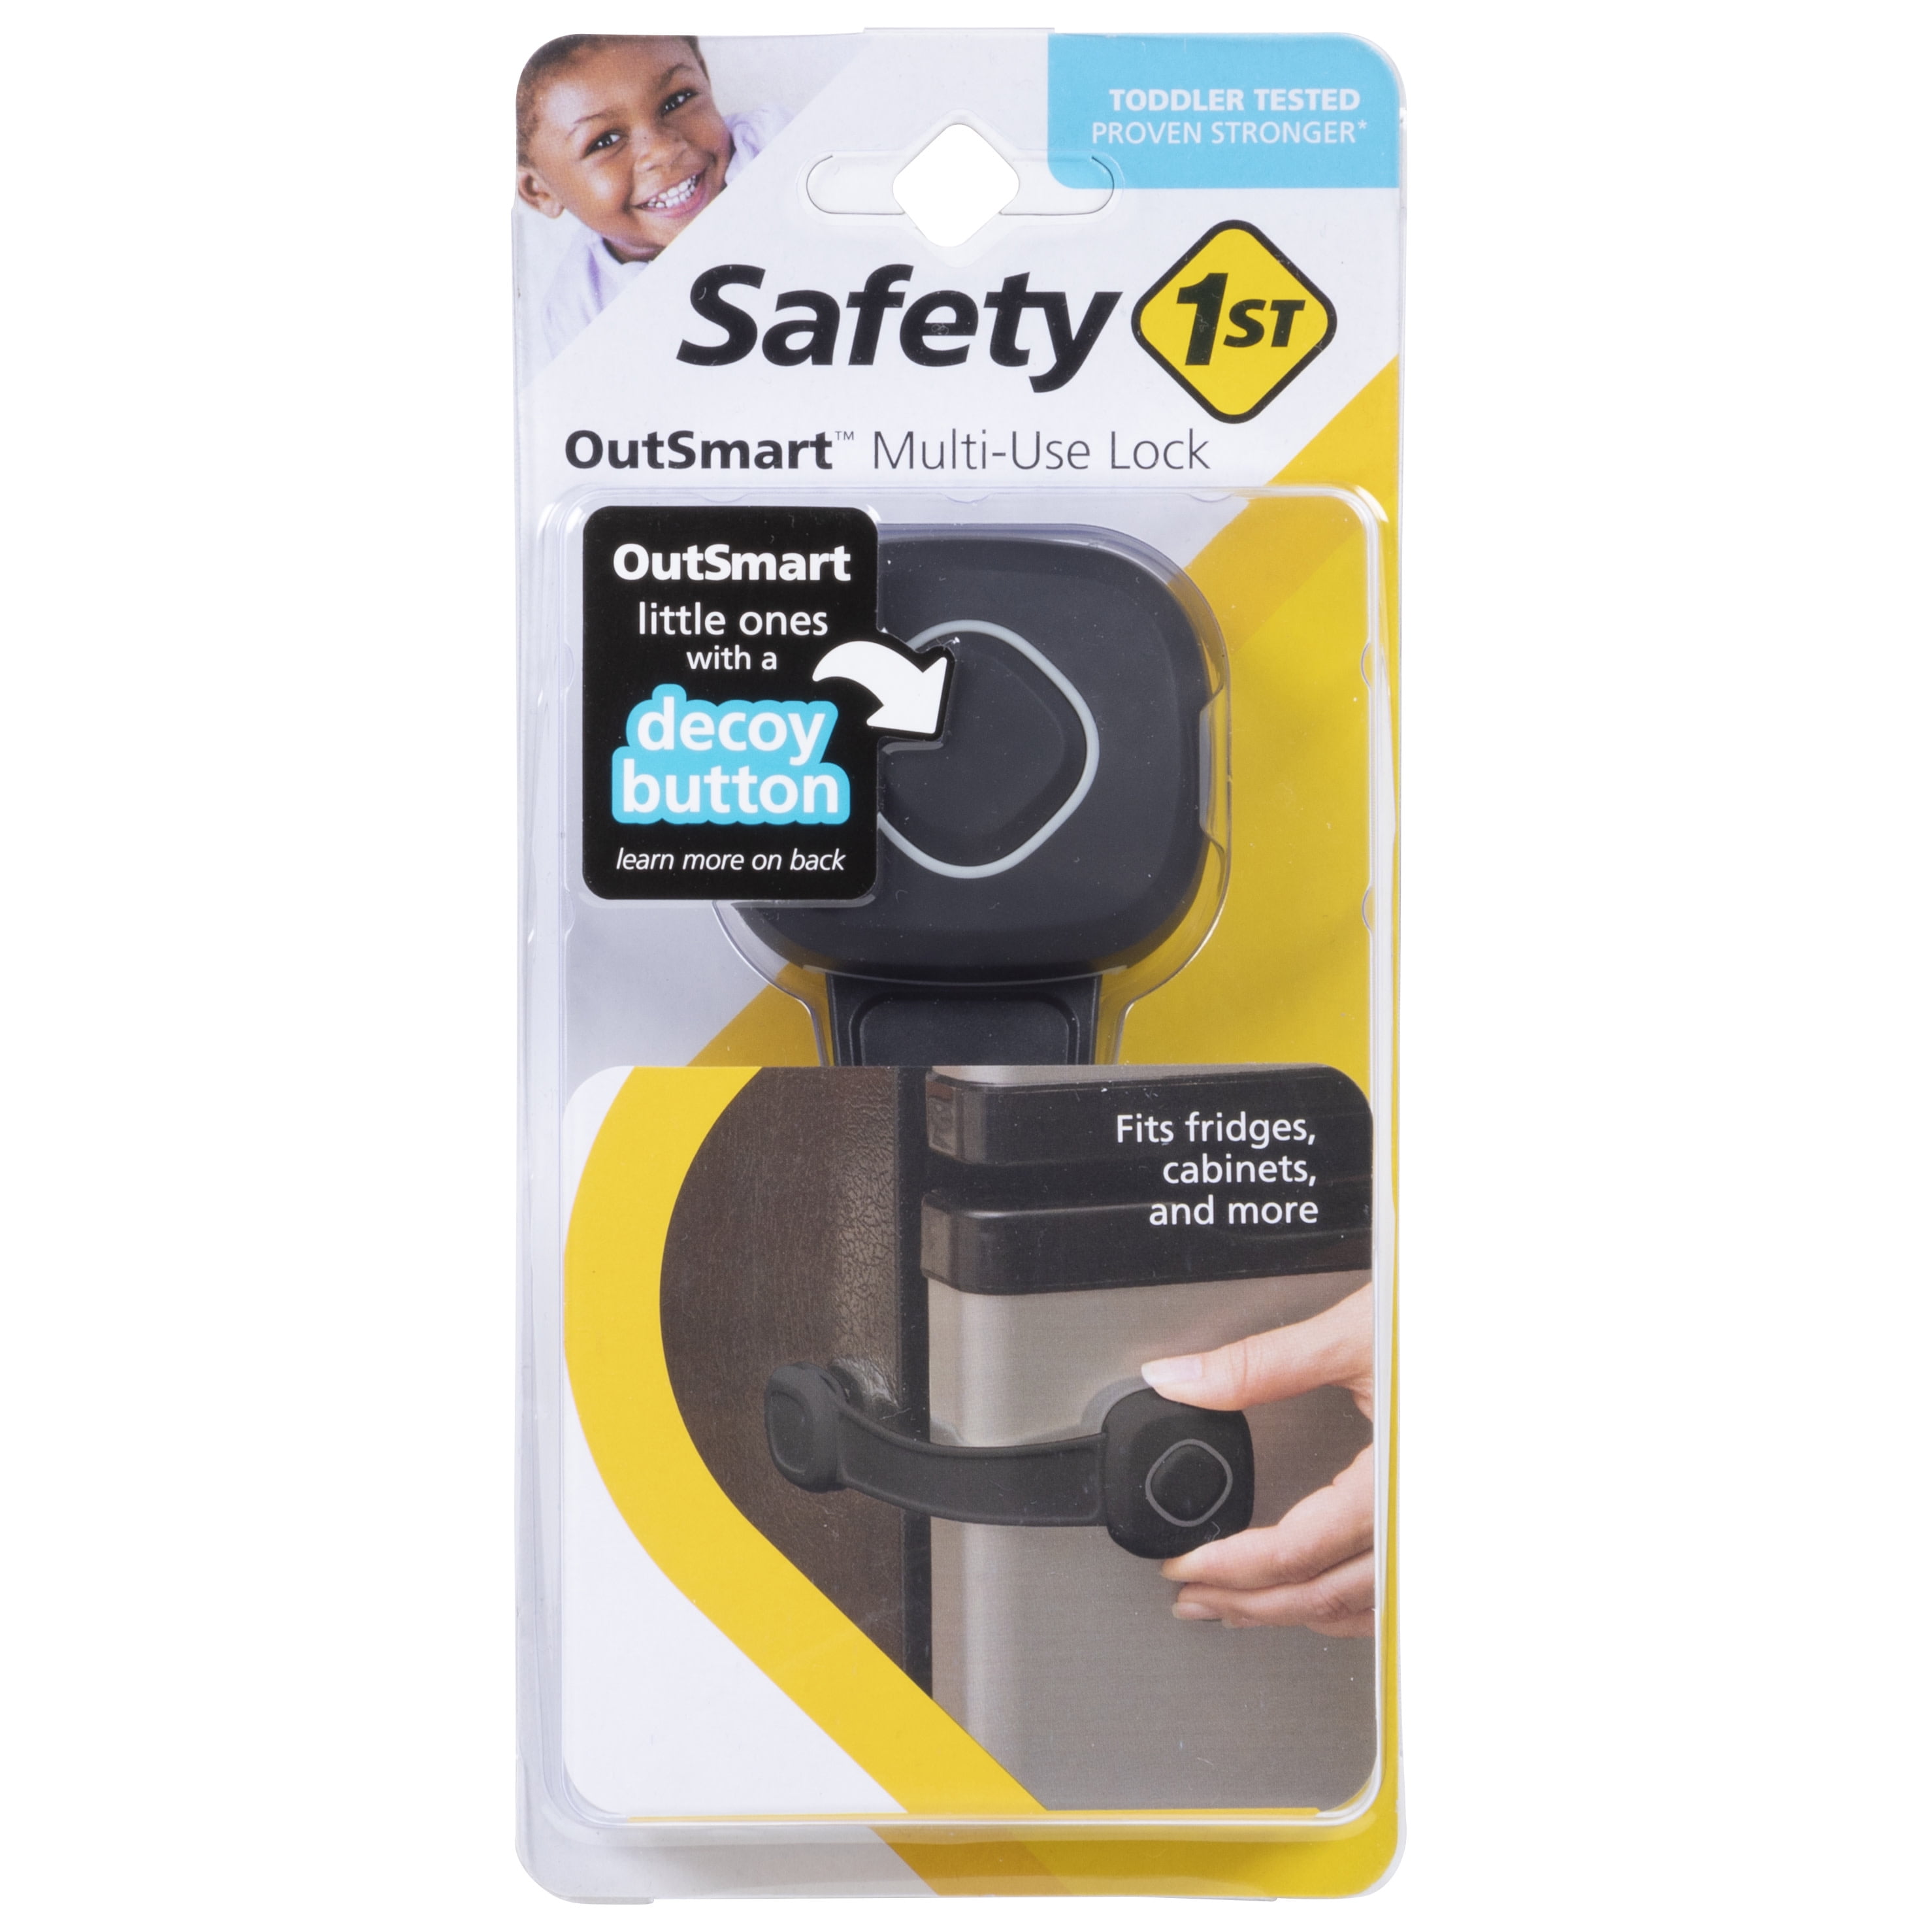 Safety 1ˢᵗ OutSmart Multi-Use Lock, Black